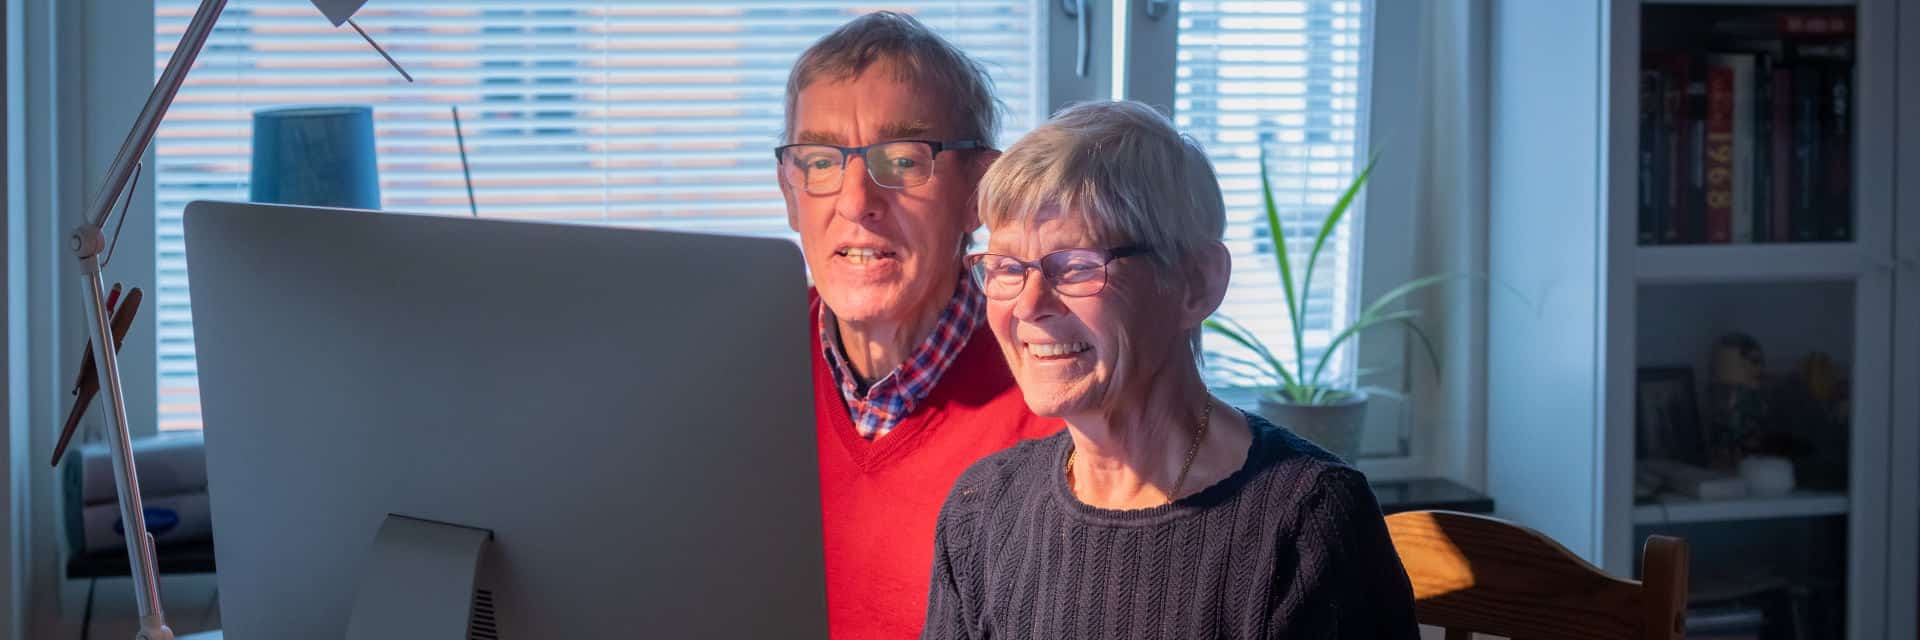 Äldre par sitter framför datorn och arbetar tillsammans